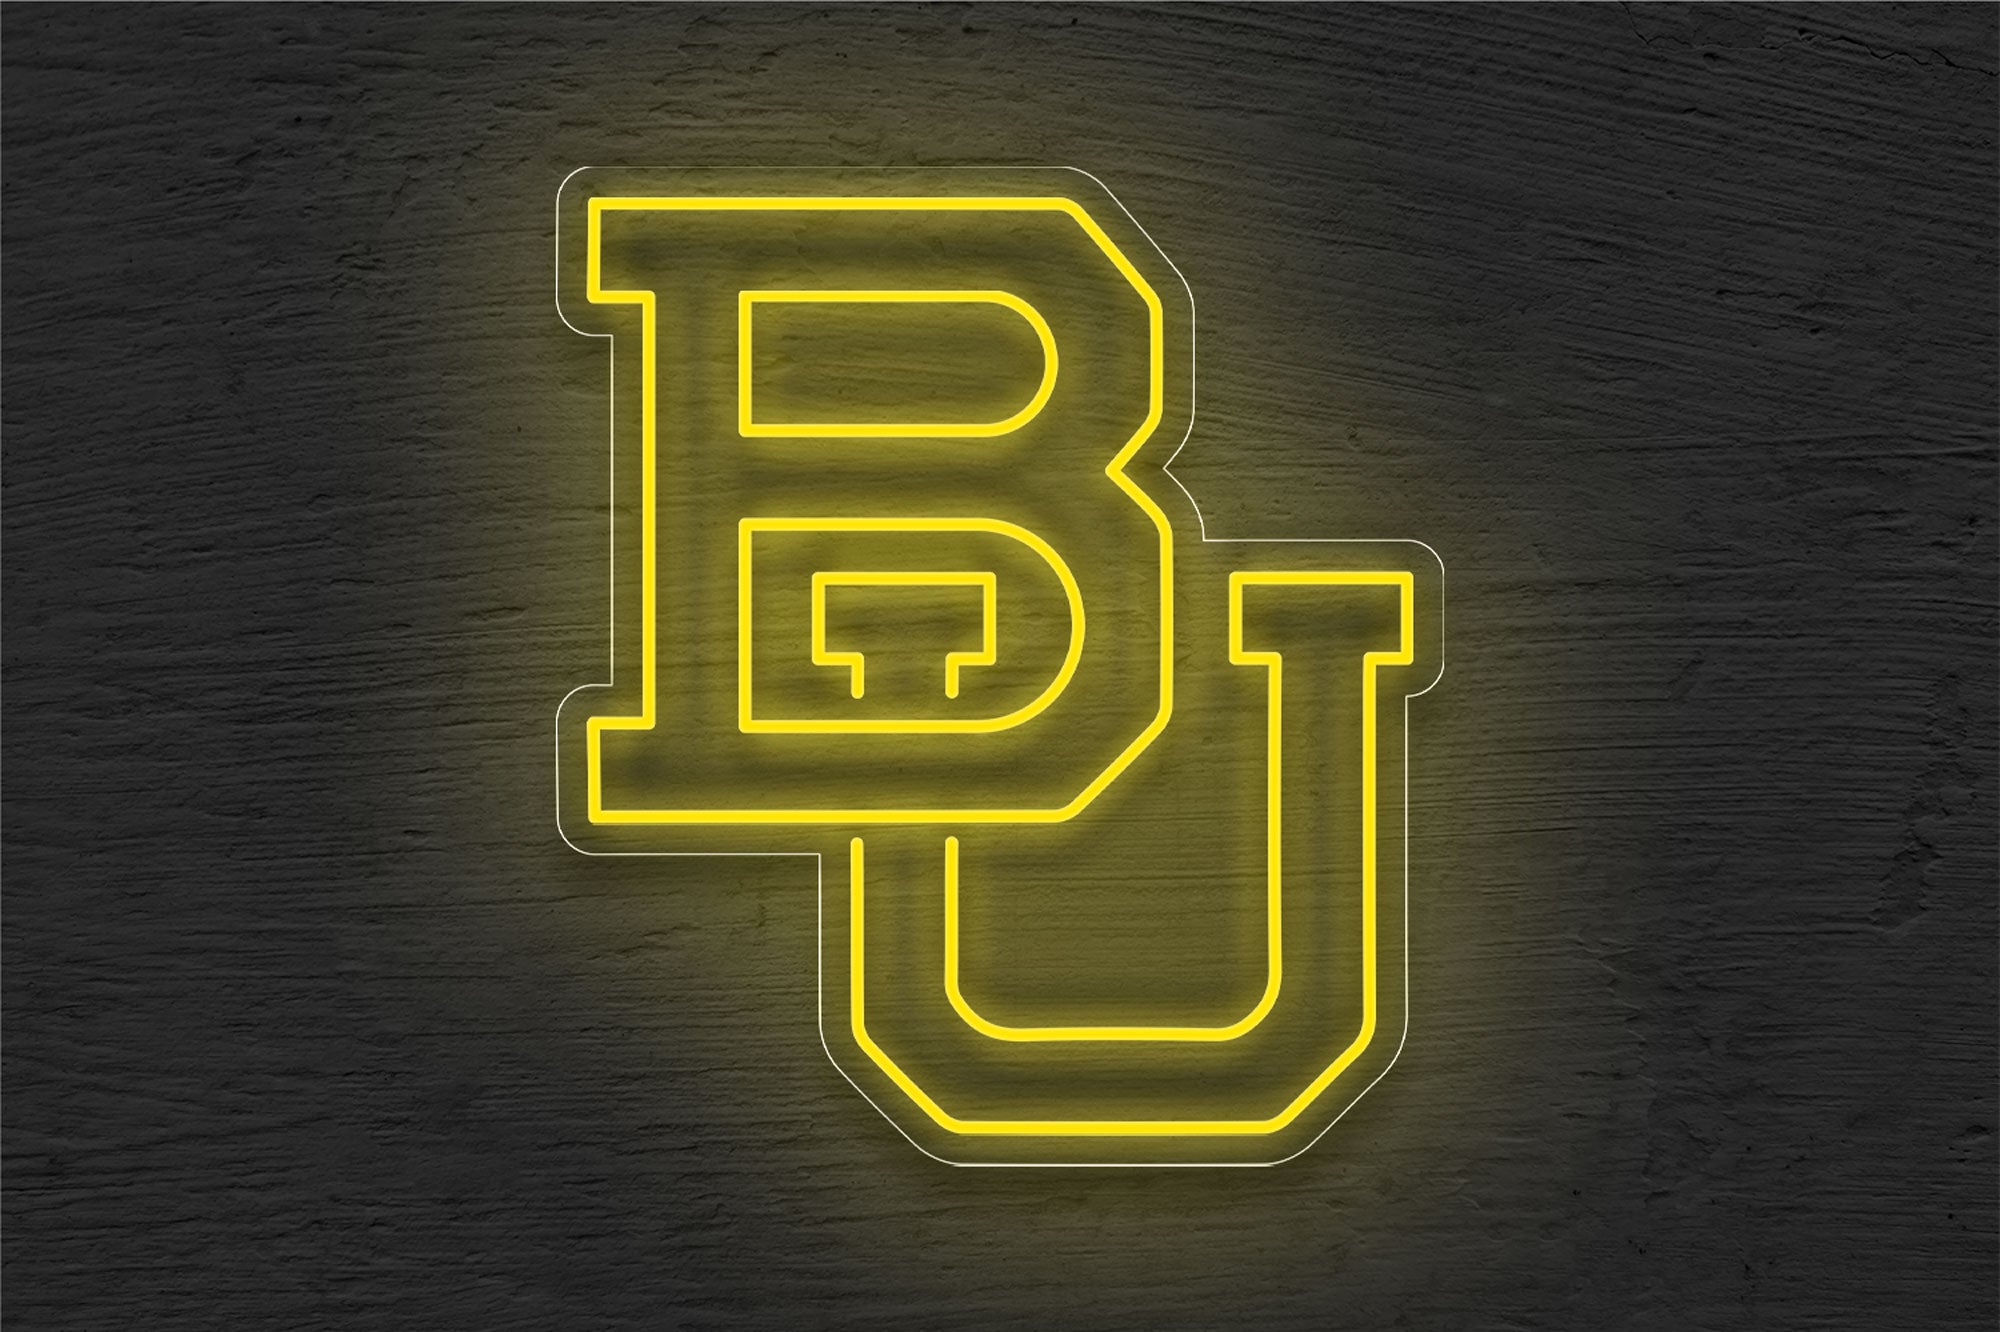 Baylor Bears Mens Basketball LED Neon Sign